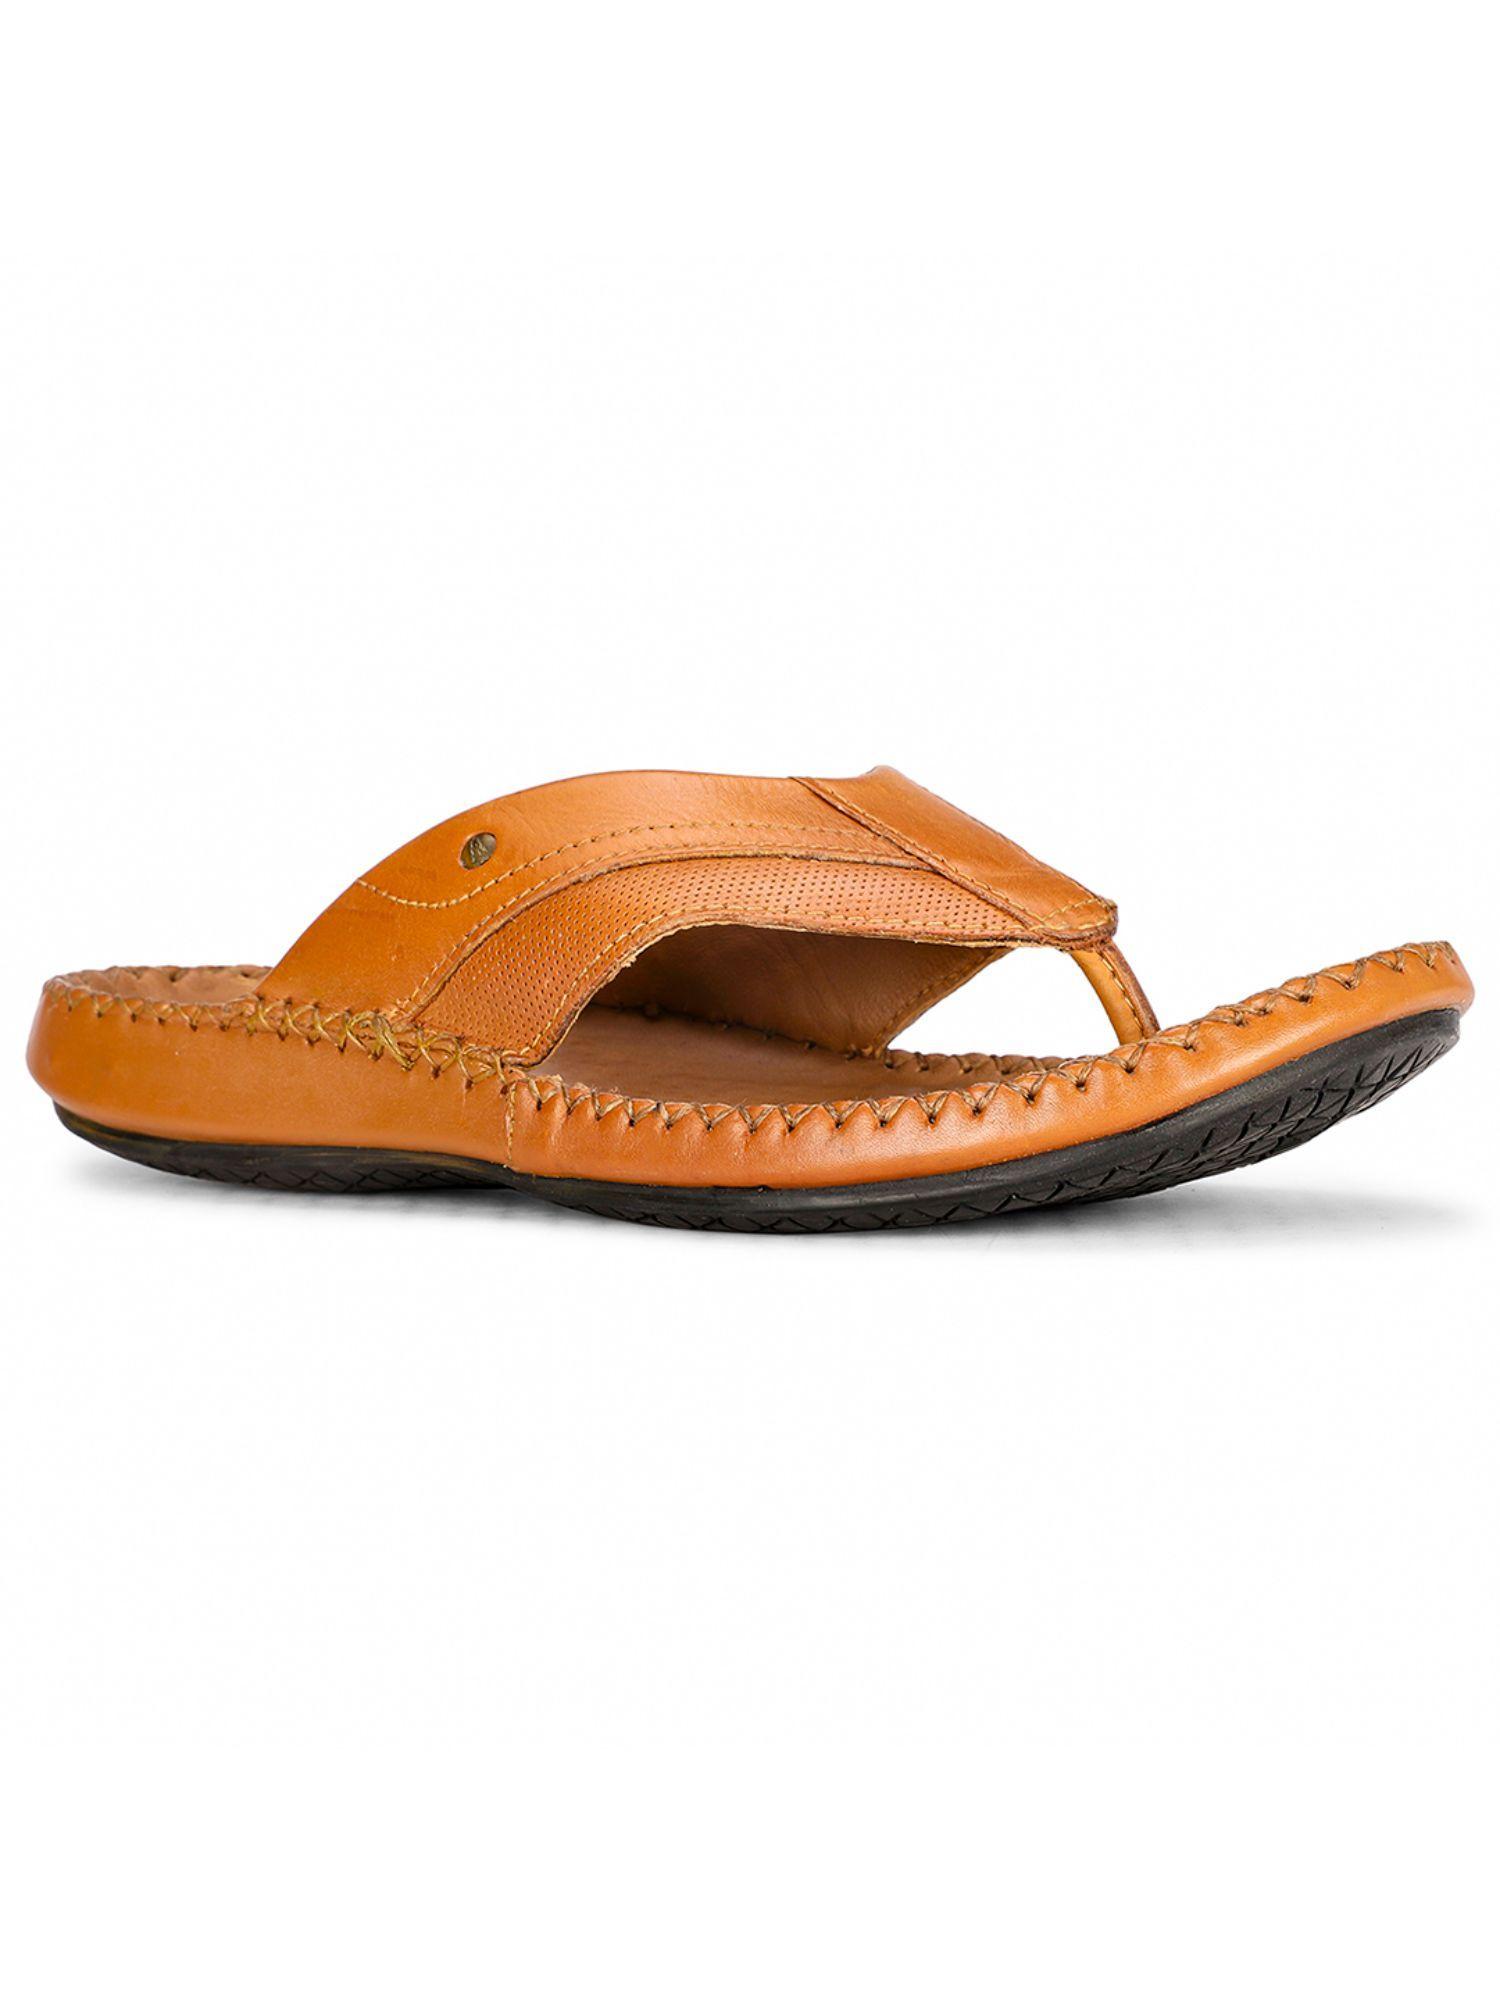 mens orange slip on casual sandals